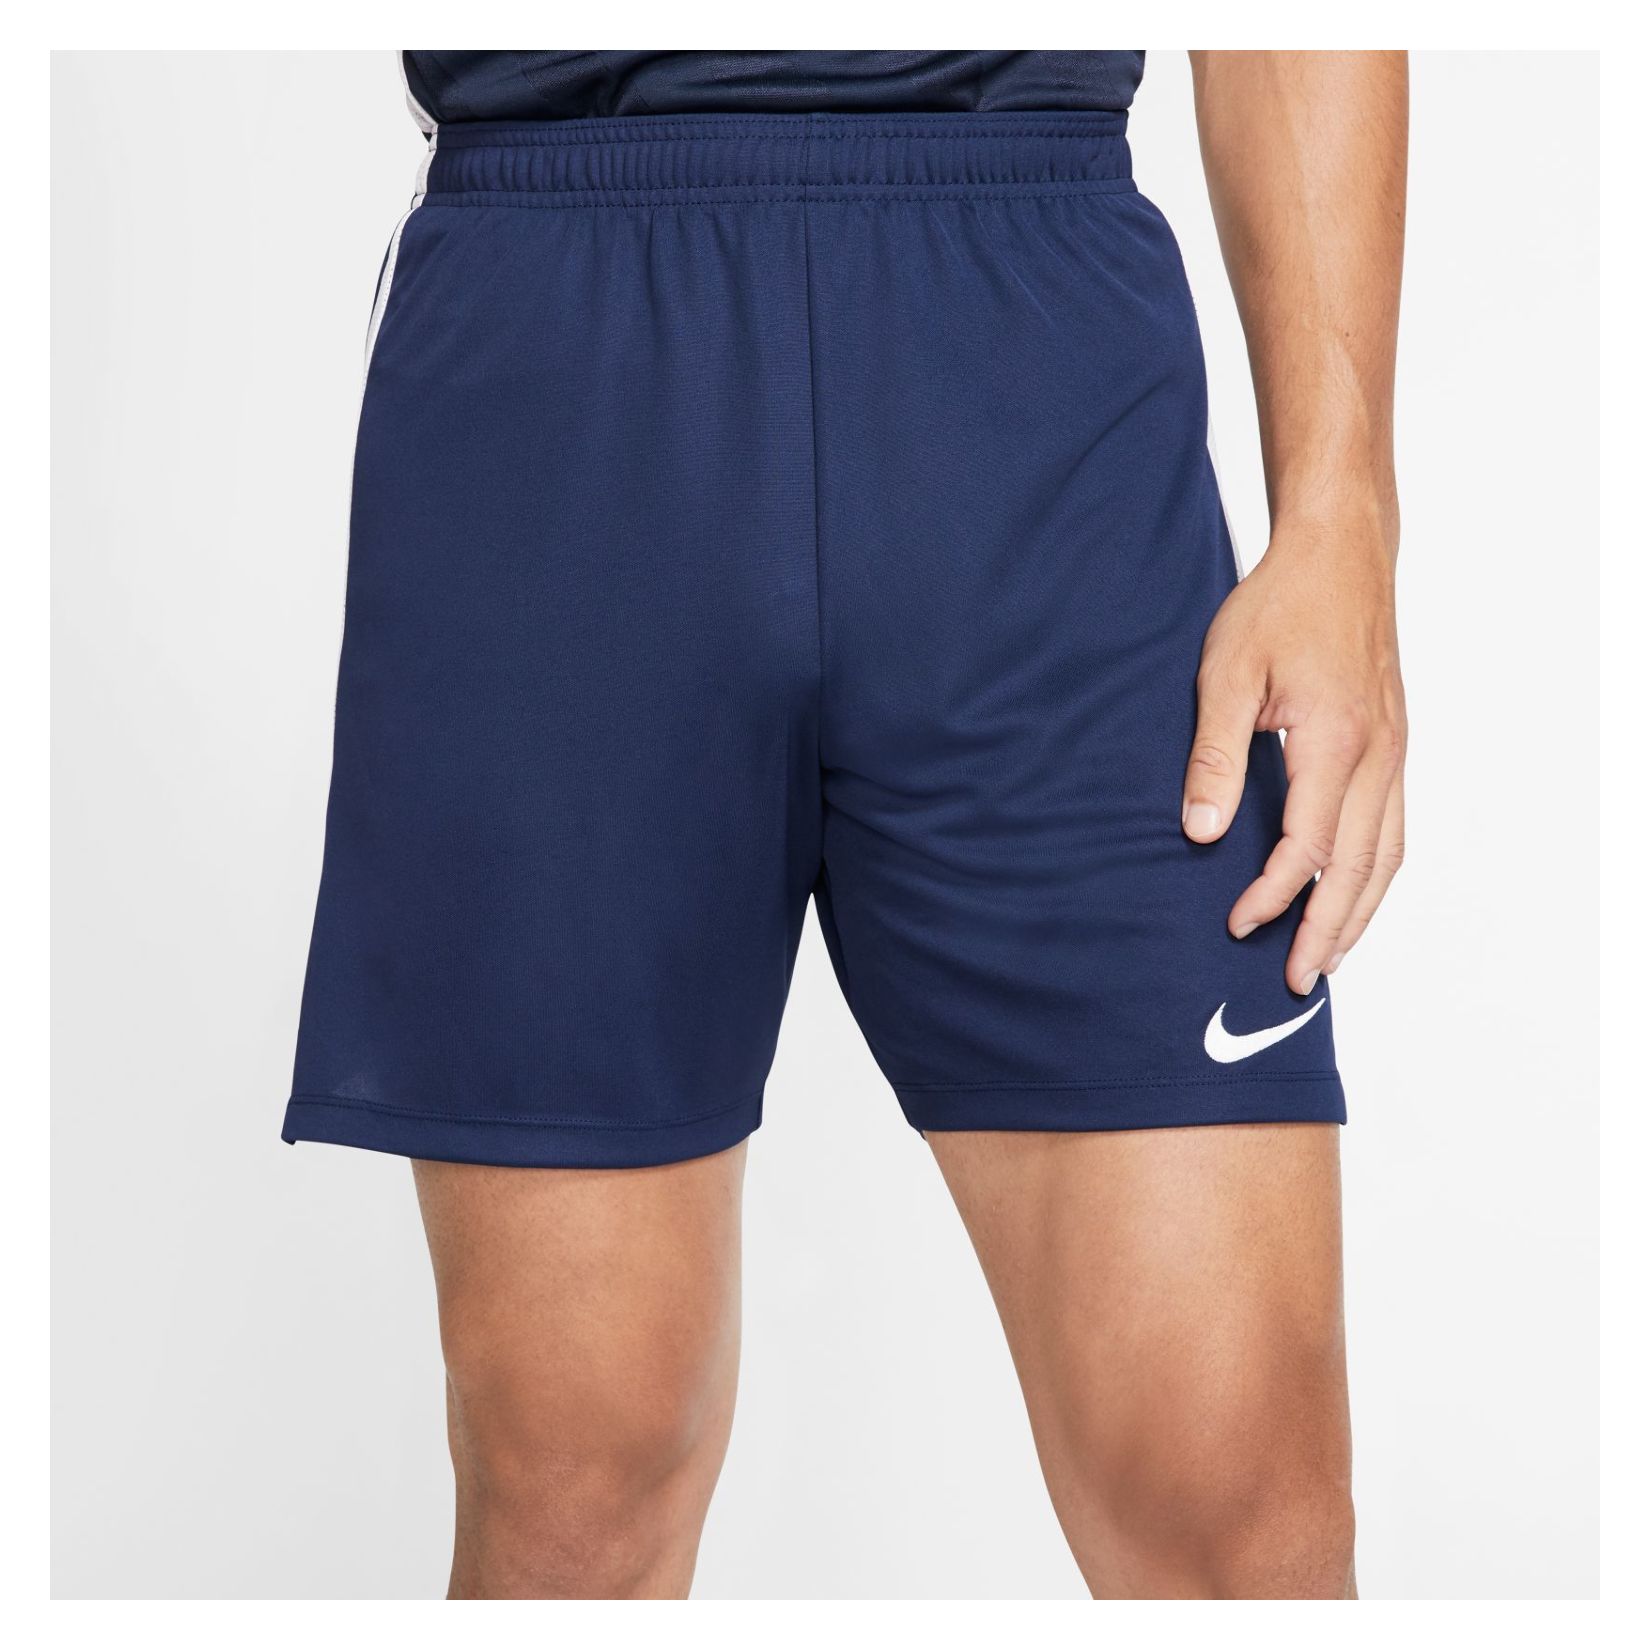 Nike Classic Shorts - Kitlocker.com